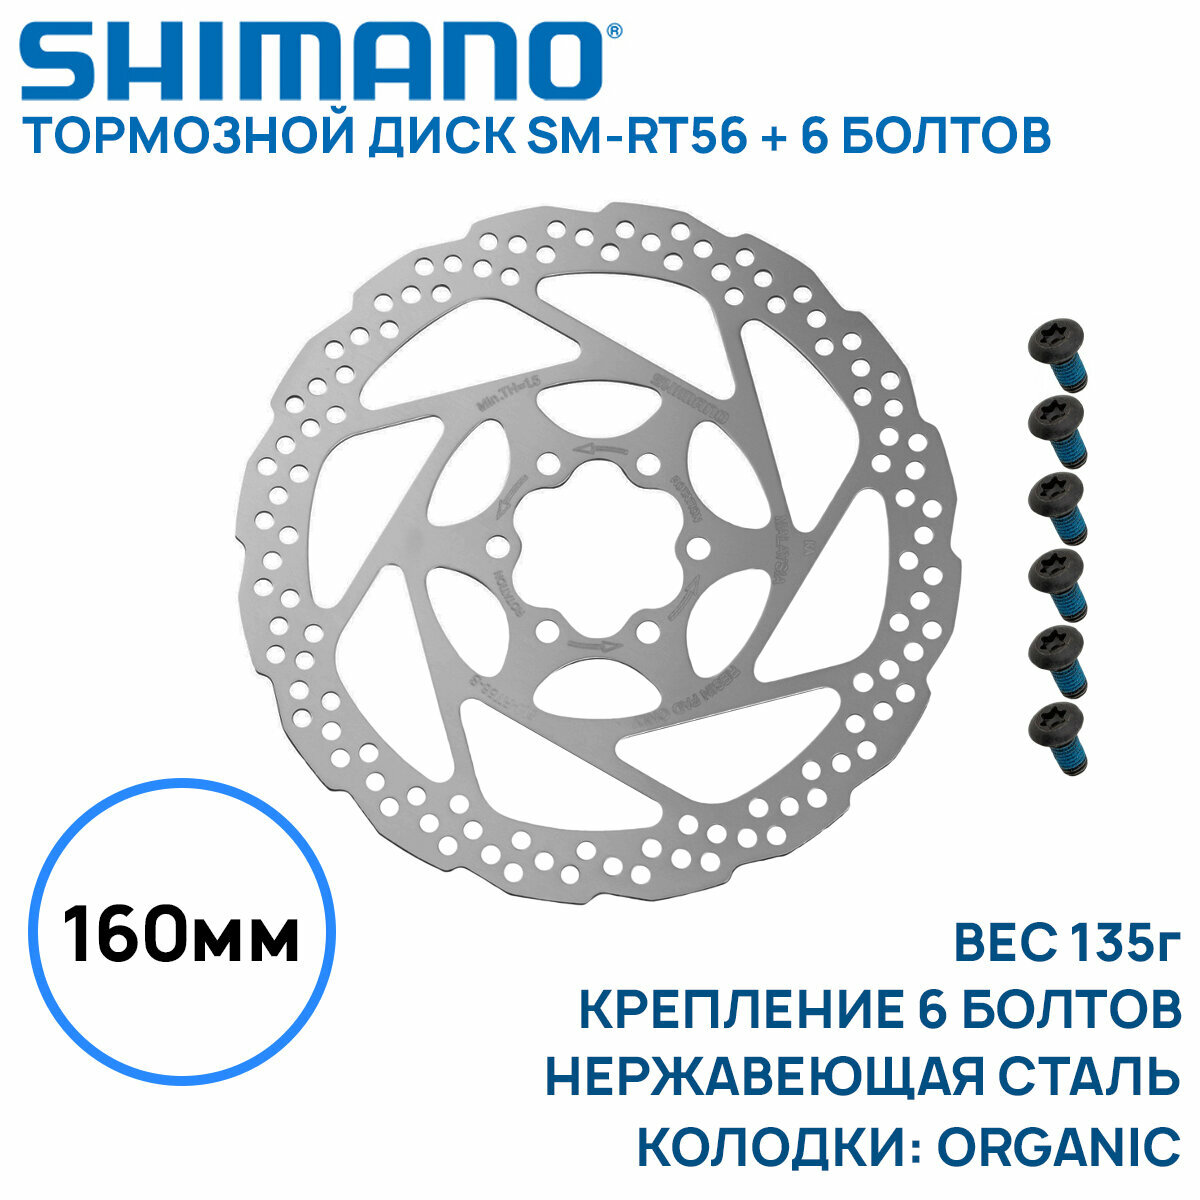 Тормозной диск Shimano SM-RT56, 160мм, крепление 6 болтов, нержавеющая сталь, только для пластиковых колодок, без коробки (OEM)